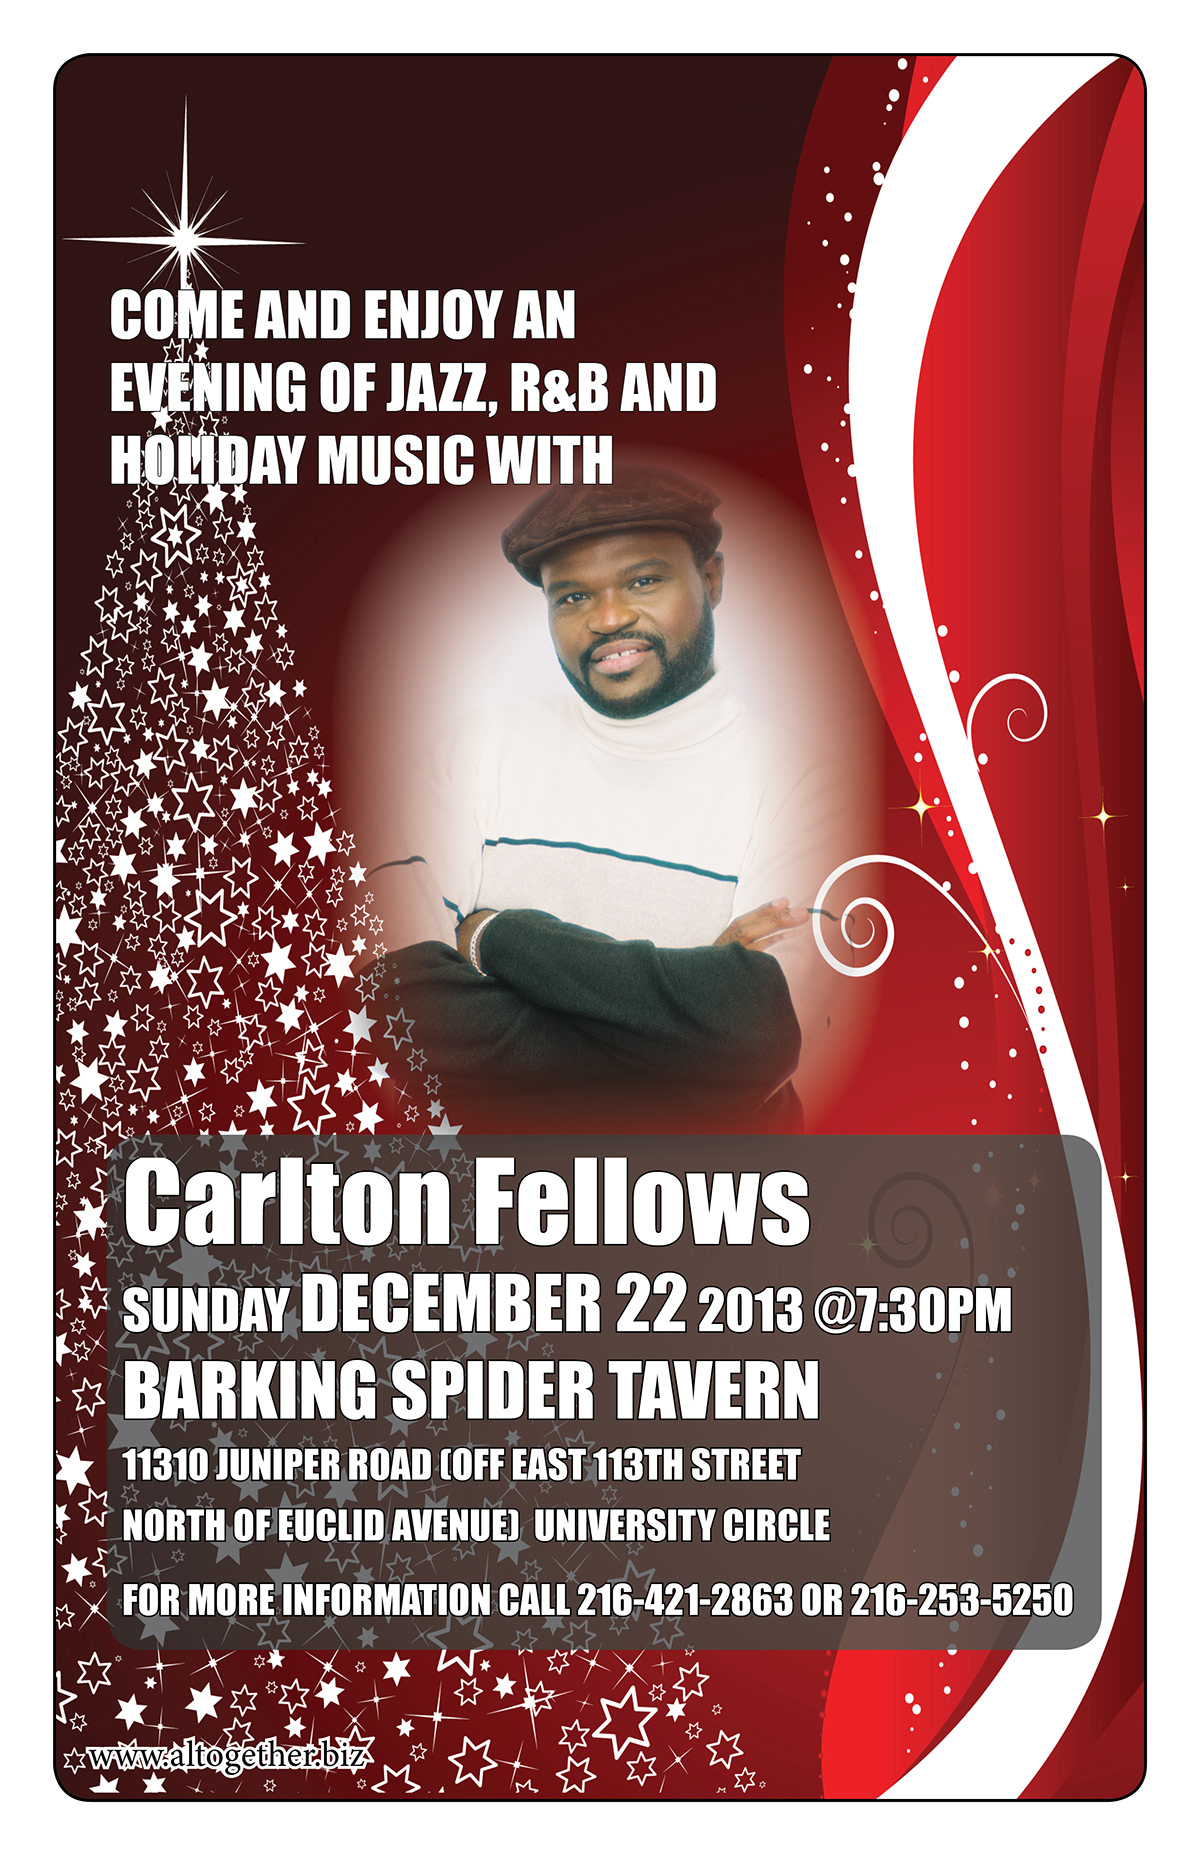 Carlton Fellows concert flyer